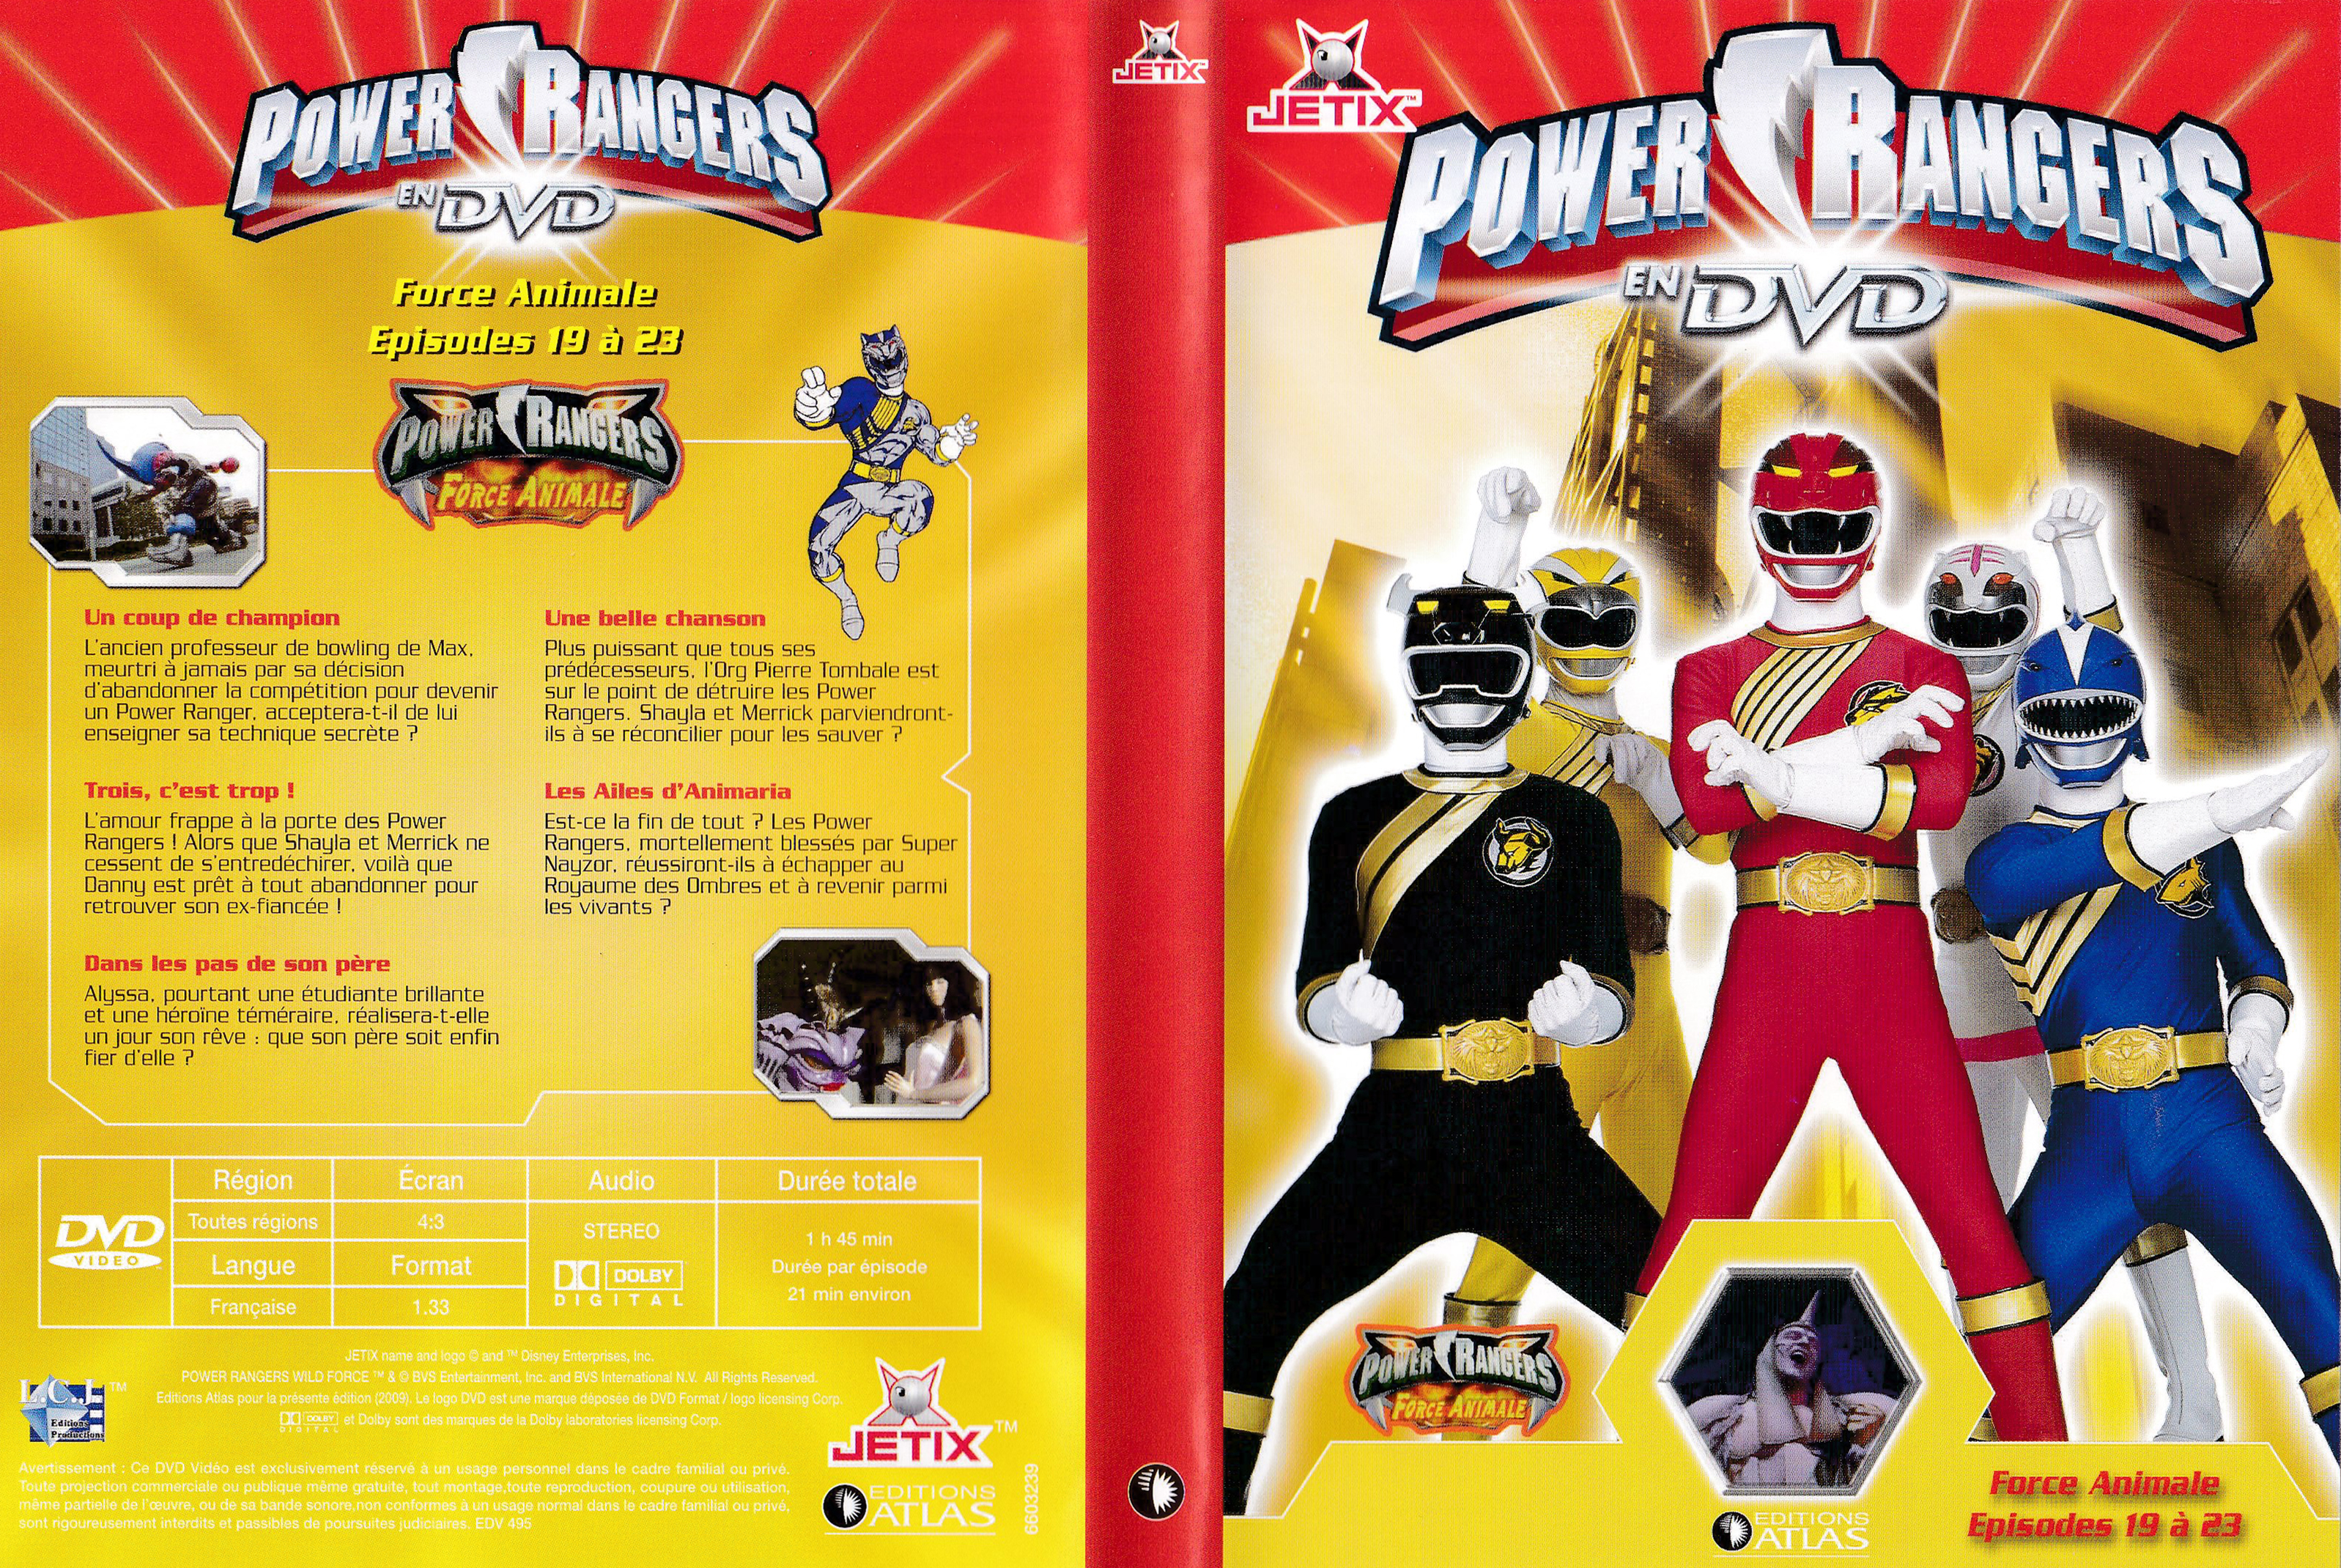 Power Rangers en DVD n°39